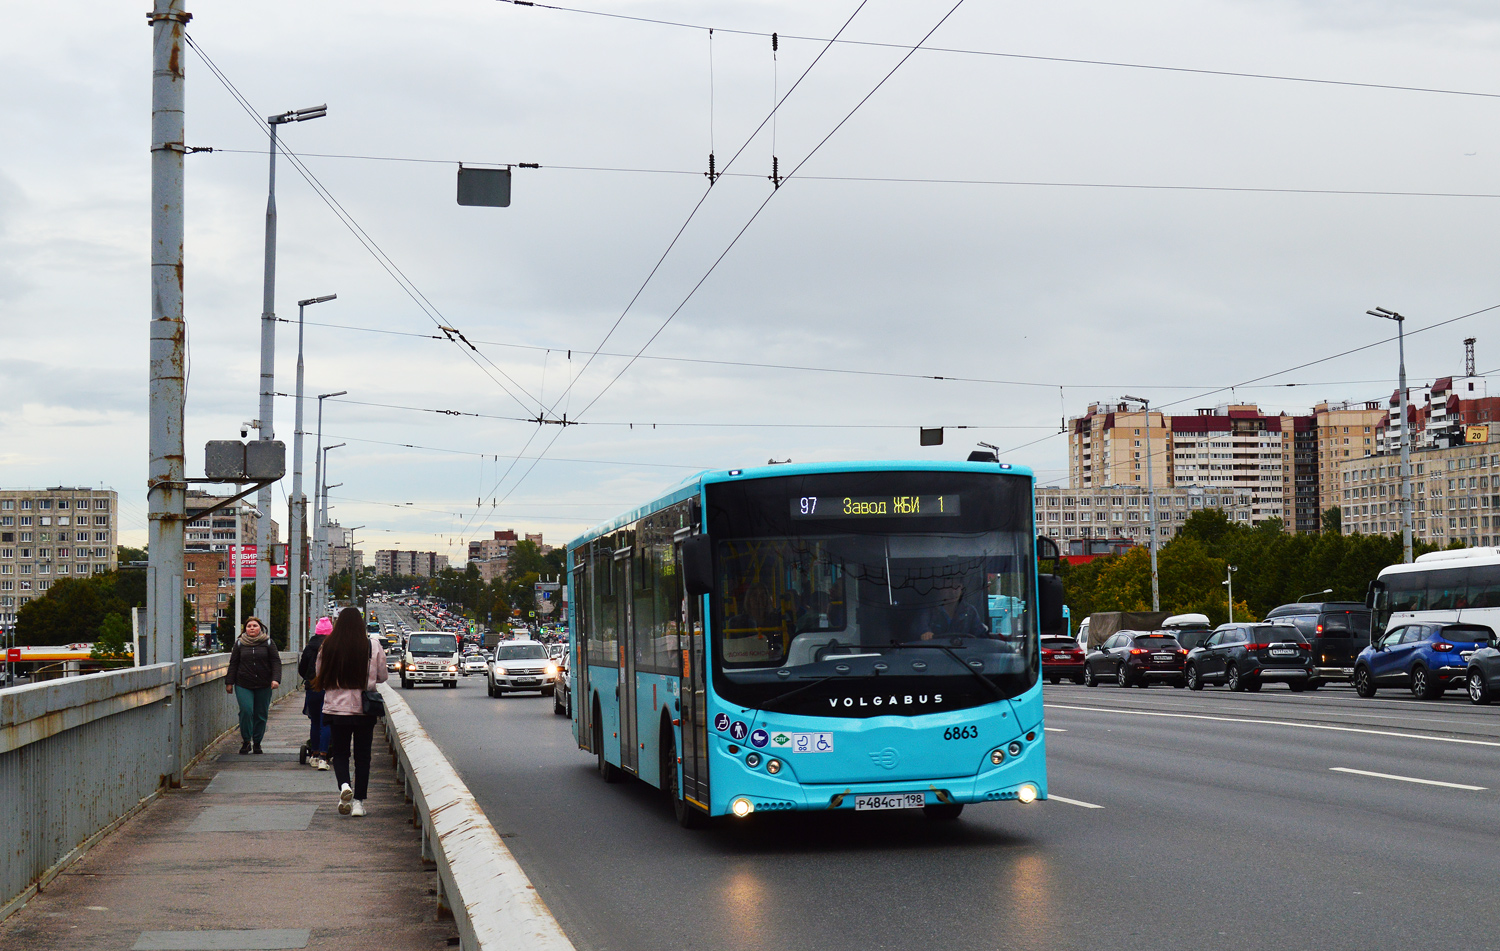 Sanktpēterburga, Volgabus-5270.G2 (LNG) № 6863